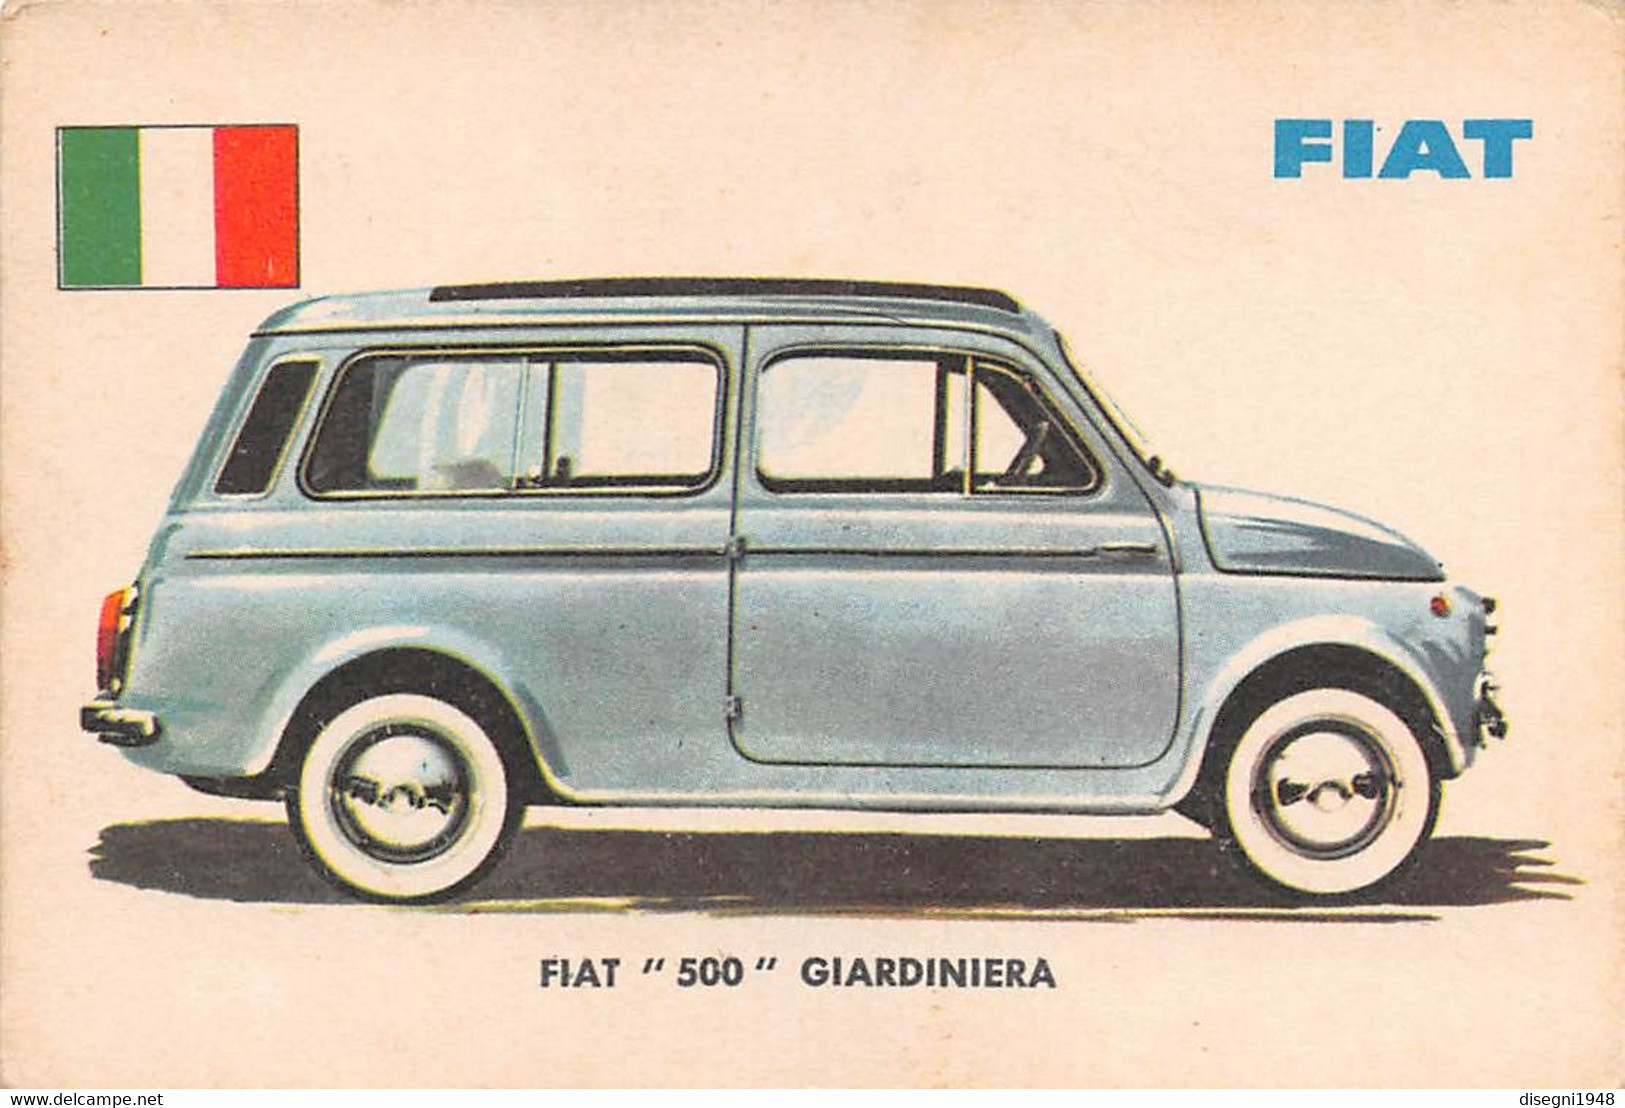 11932 "FIAT 500 GIARDINIERA 14 - AUTO INTERNATIONAL PARADE - SIDAM TORINO - 1961" FIGURINA CARTONATA ORIG. - Auto & Verkehr